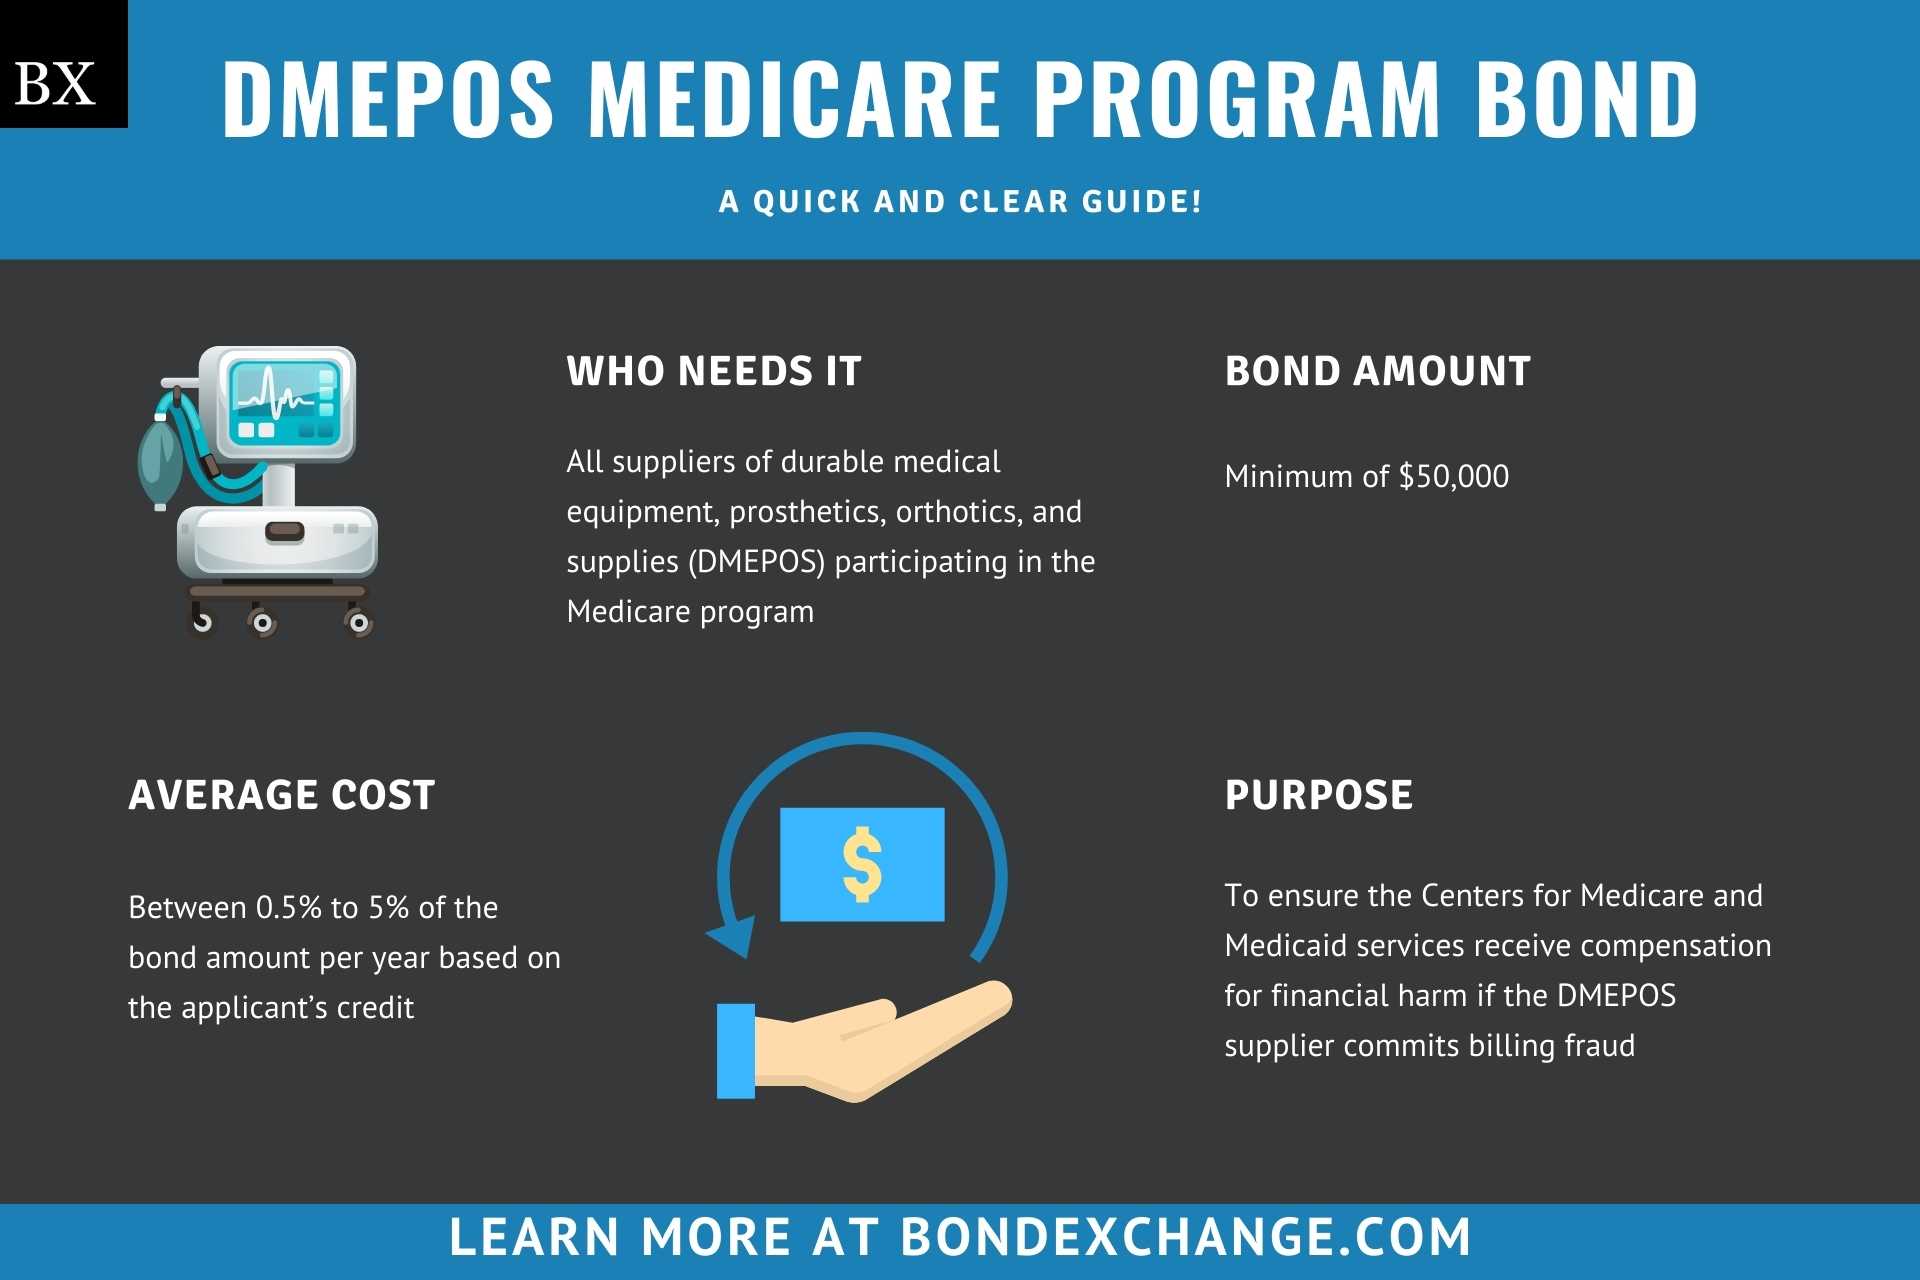 DMEPOS Medicare Program Bond